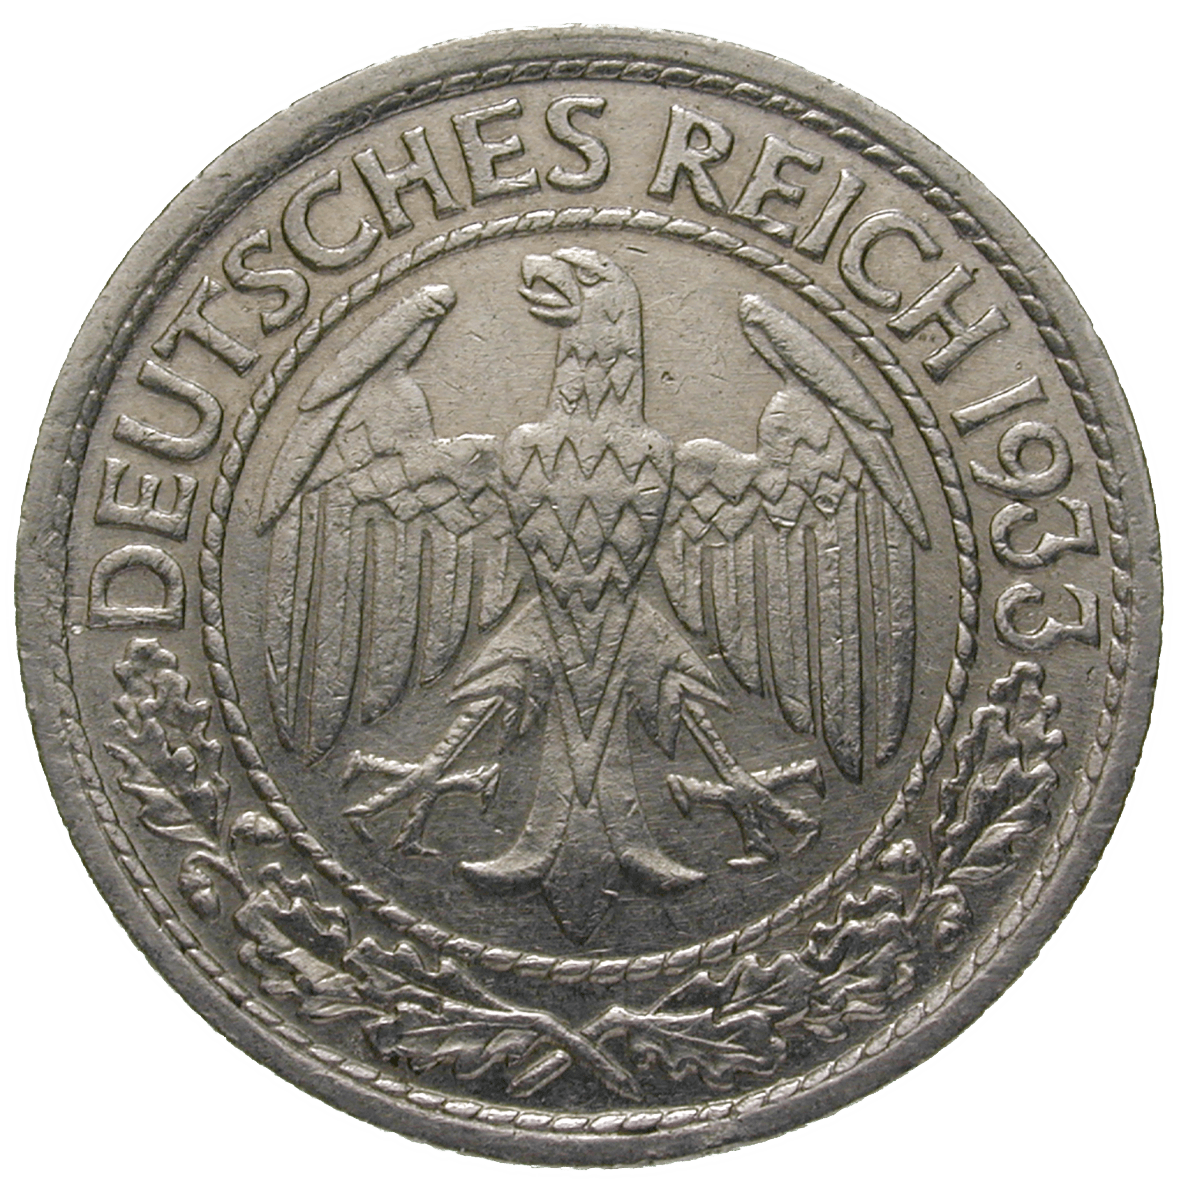 German Empire, Weimar Republic, 50 Reichspfennig 1933 (obverse)